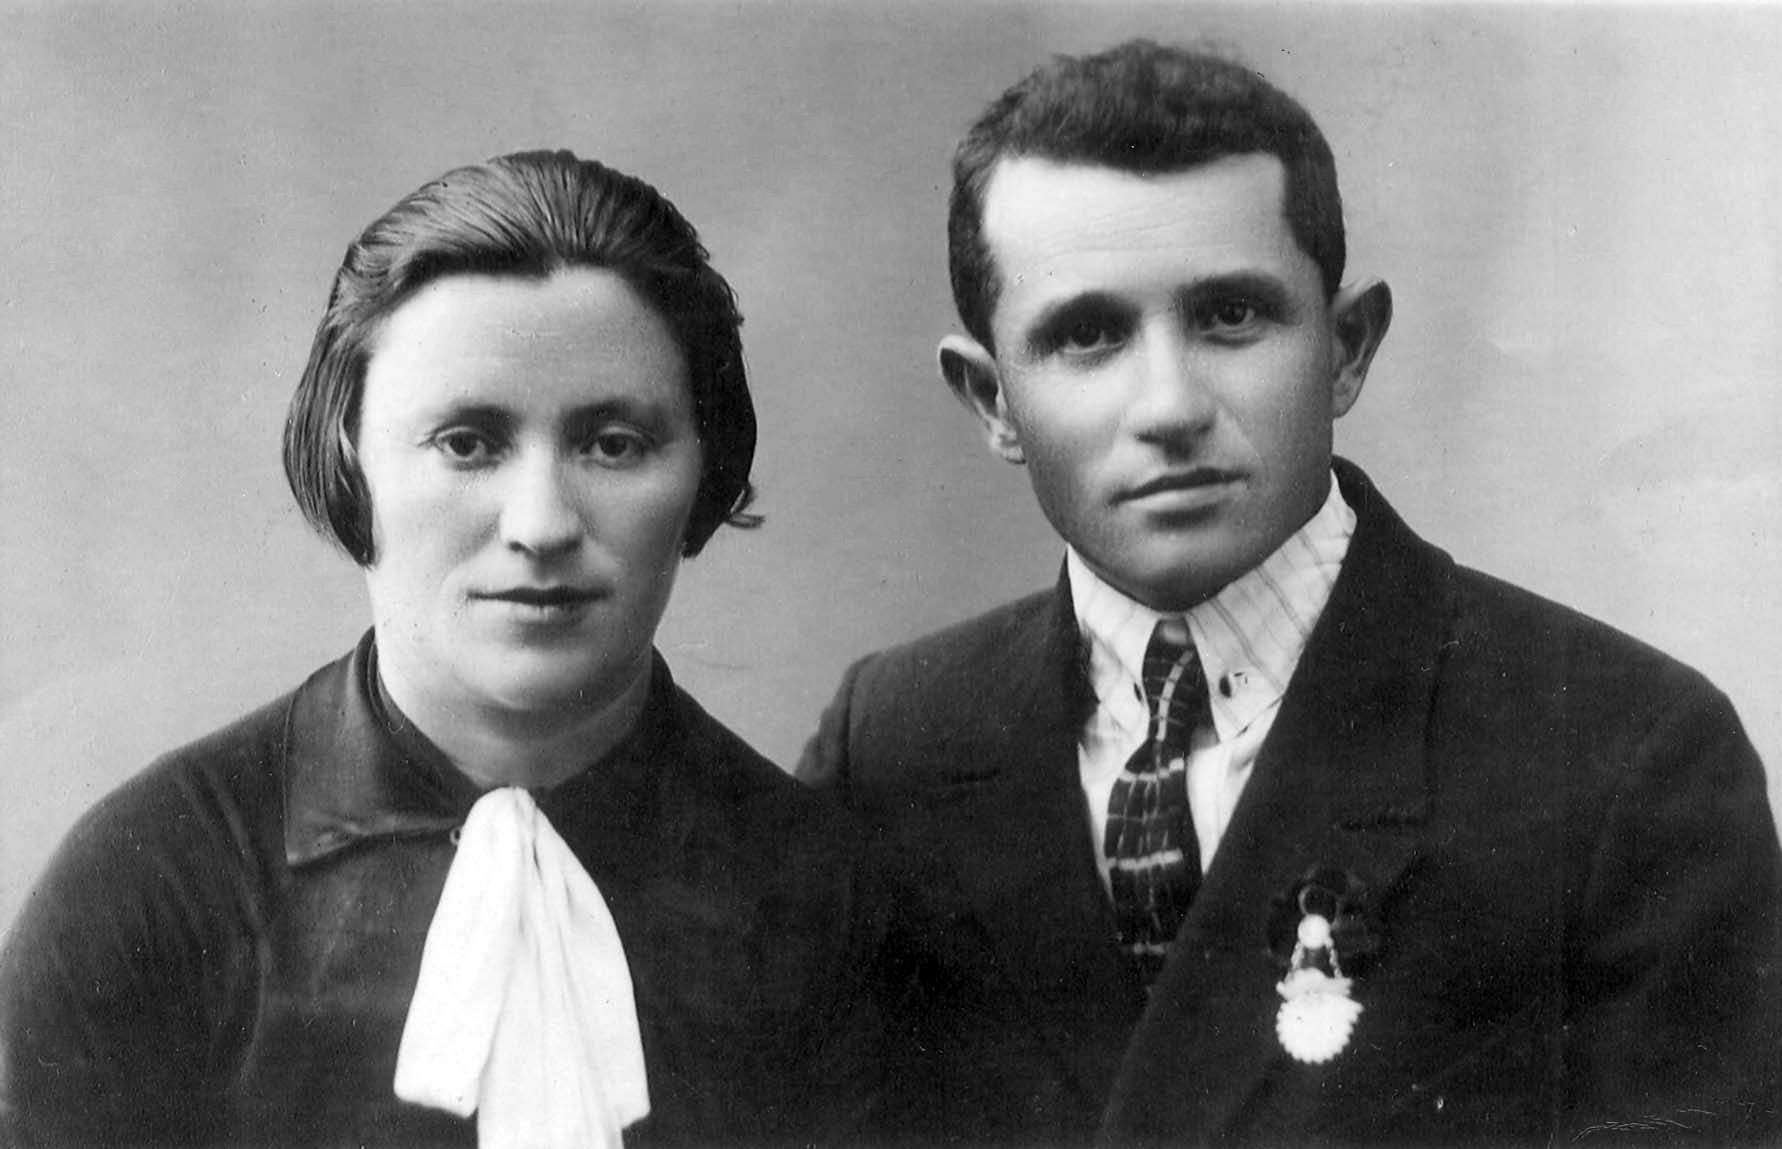 גולדה שוסטק התגוררה בקייב שבאוקראינה ונרצחה בספטמבר 1941 בבאבי יאר. בעלה יונה נהרג בשורות הצבא האדום